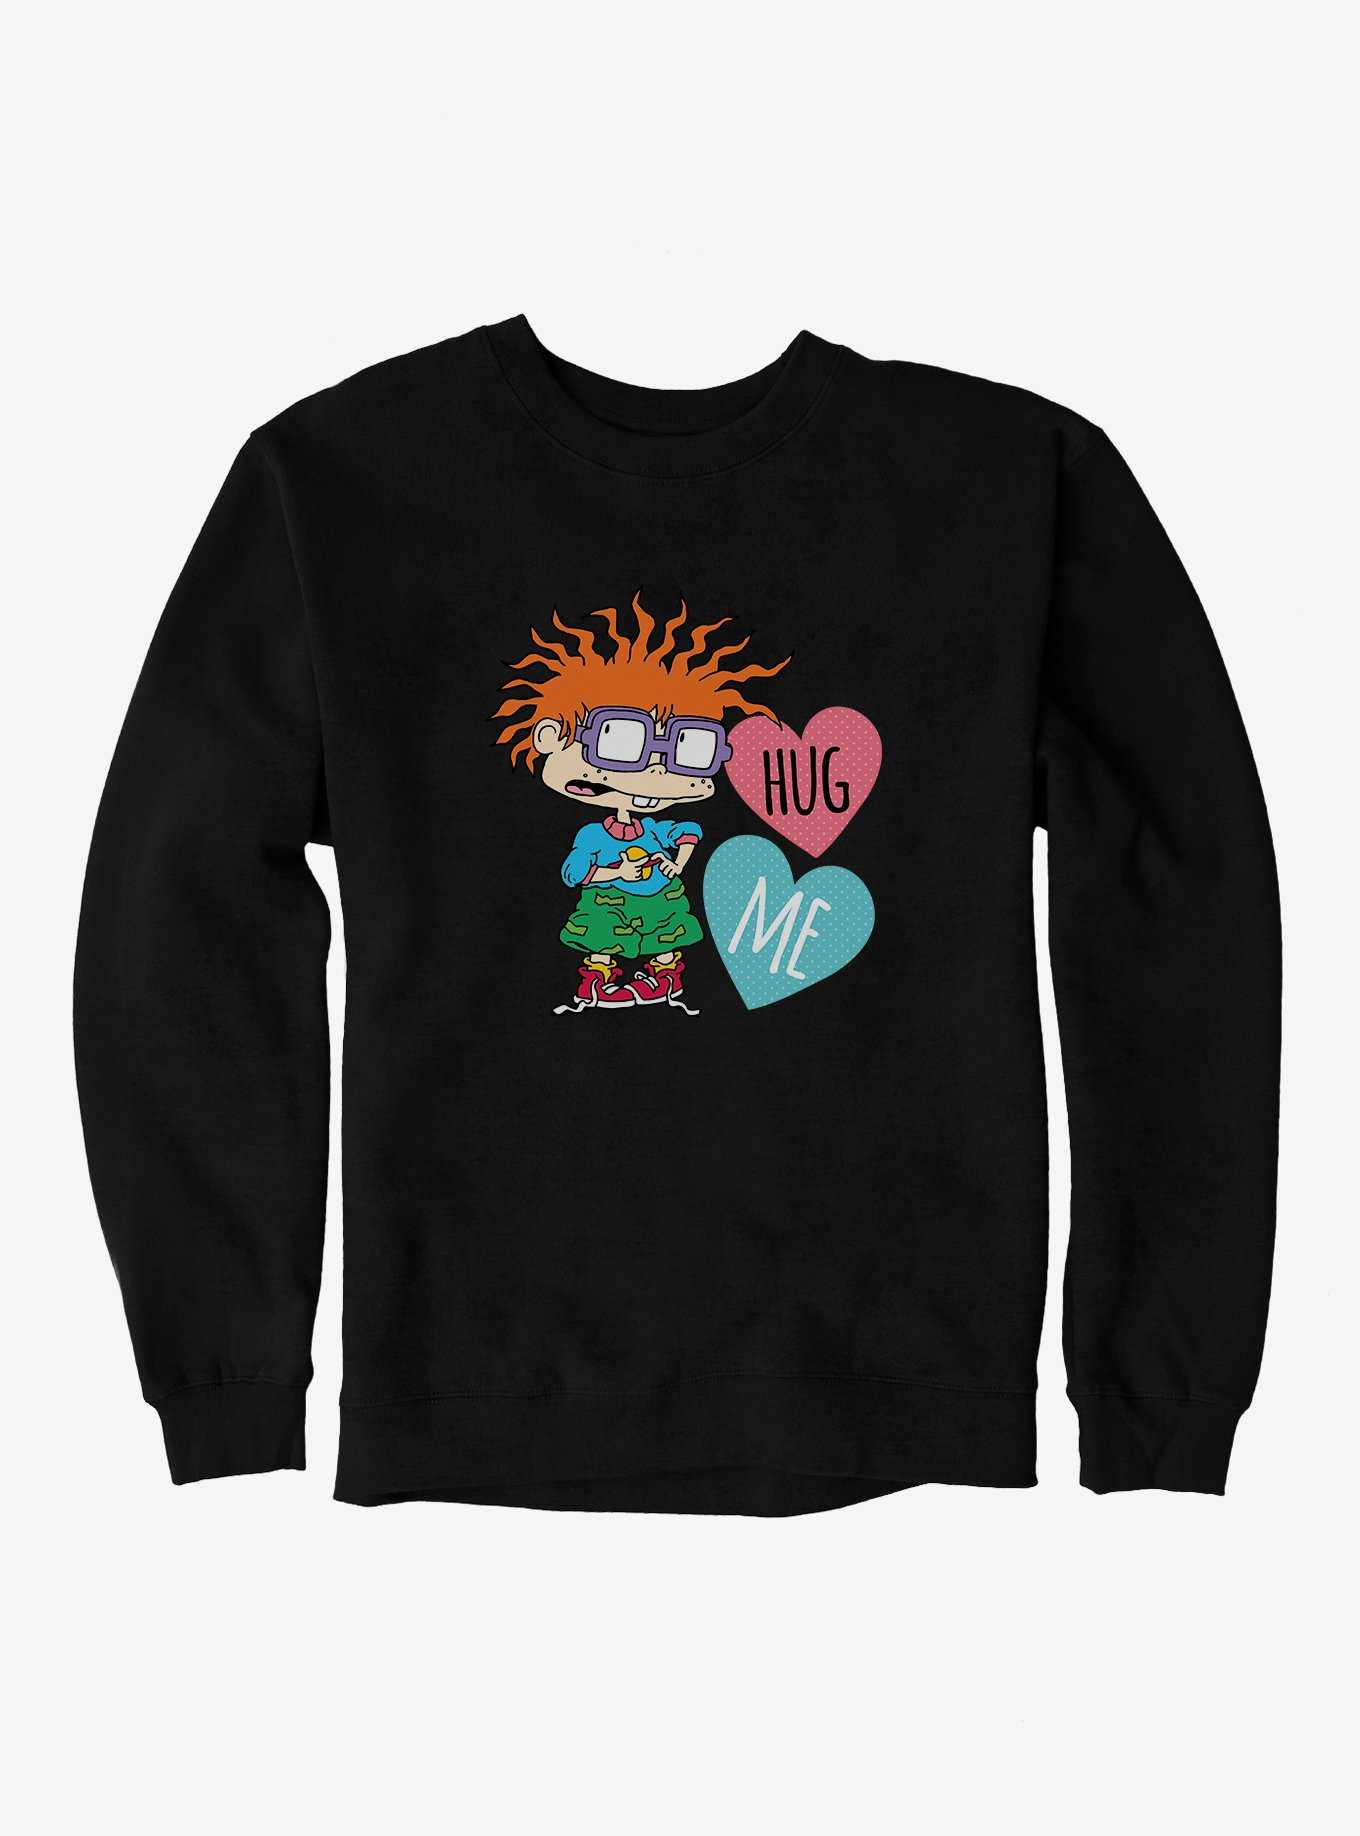 Rugrats Chuckie Hug Me Sweatshirt, , hi-res